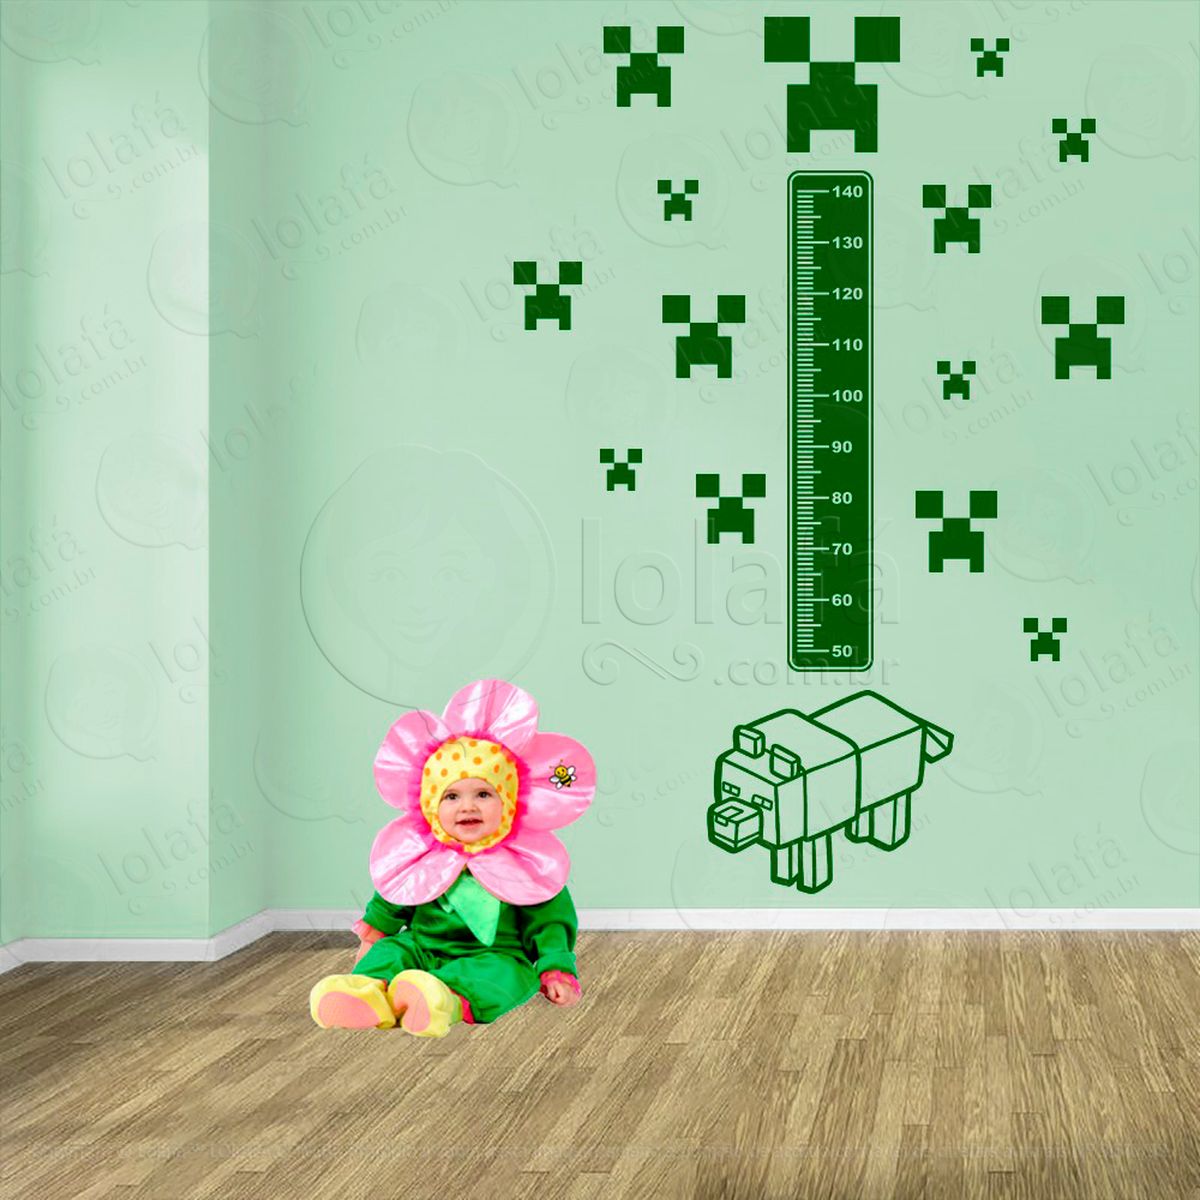 minecraft e minecraft adesivo régua de crescimento infantil, medidor de altura para quarto, porta e parede - mod:736